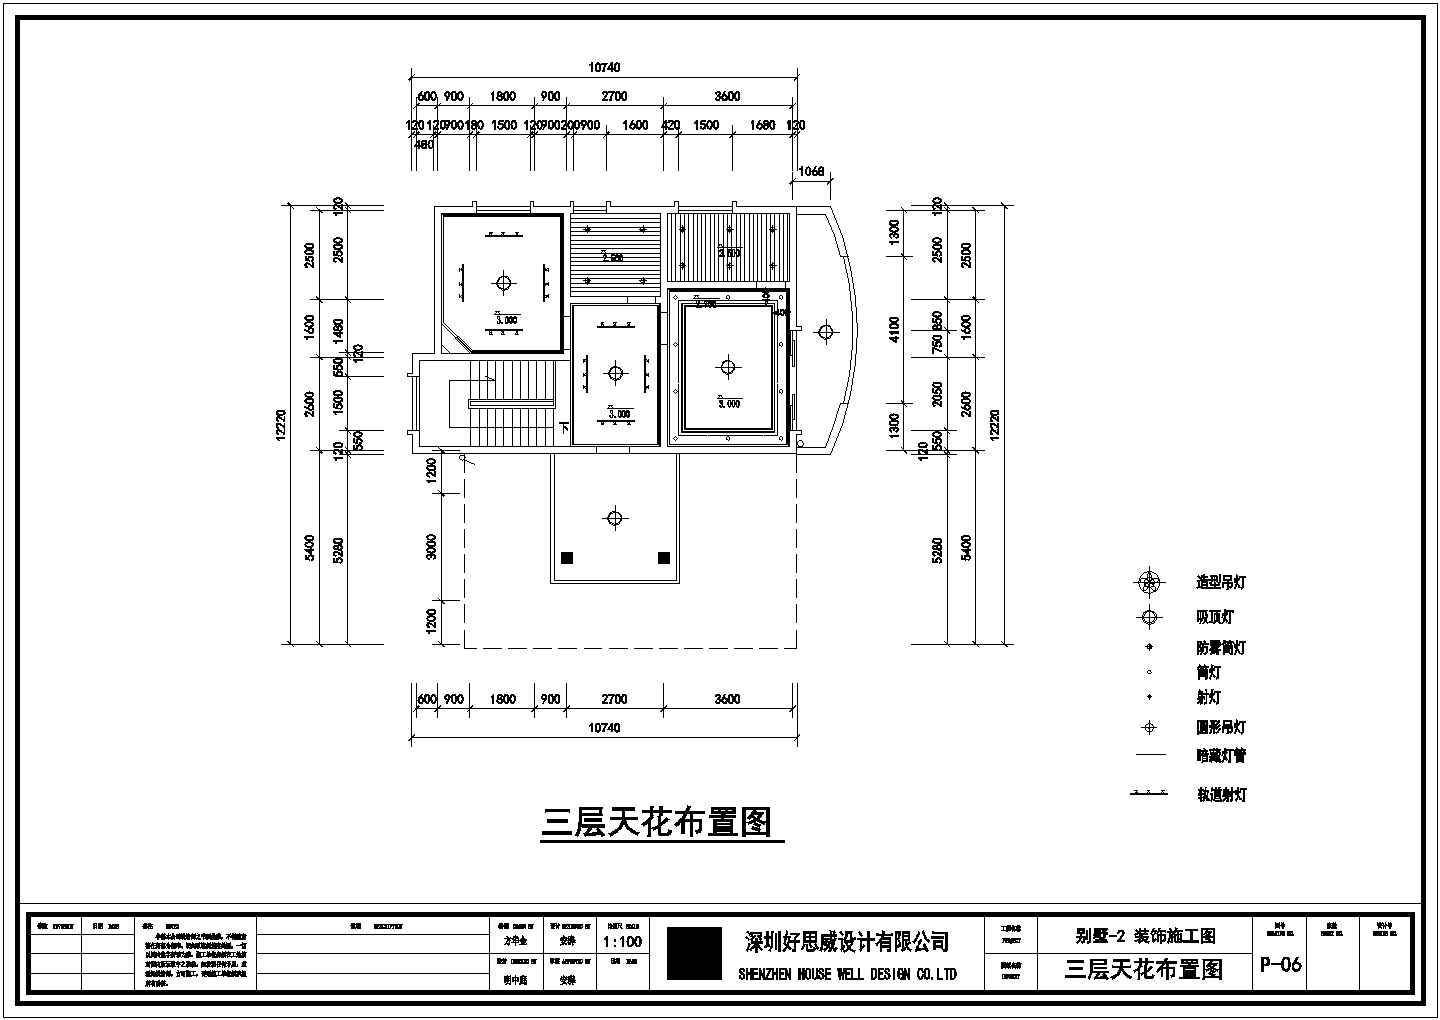 广州市城湖家园小区3层独栋别墅全套装修装饰设计CAD图纸